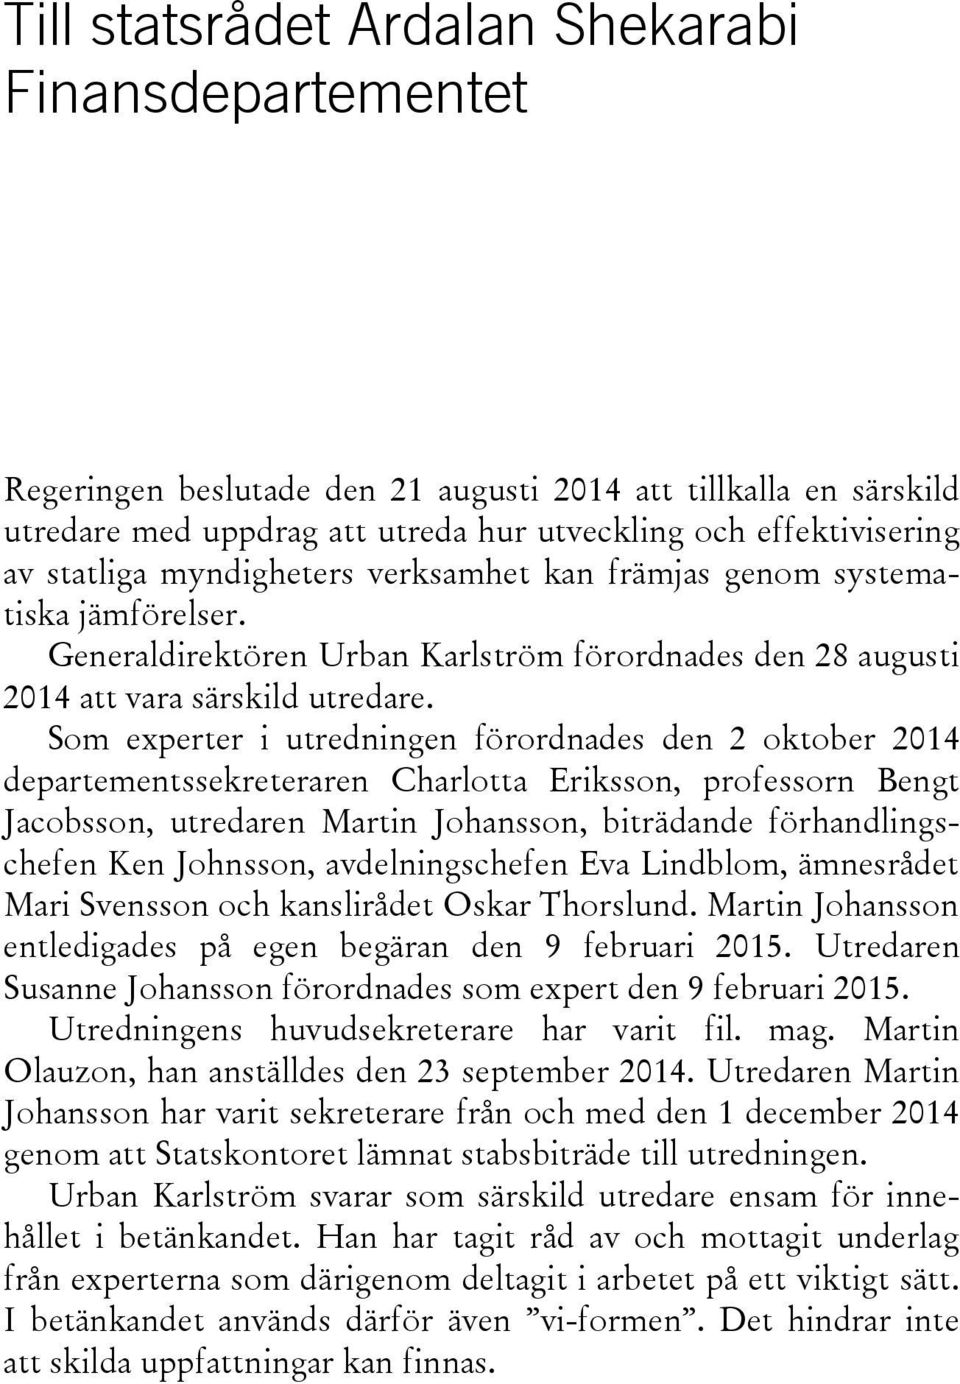 Som experter i utredningen förordnades den 2 oktober 2014 departementssekreteraren Charlotta Eriksson, professorn Bengt Jacobsson, utredaren Martin Johansson, biträdande förhandlingschefen Ken